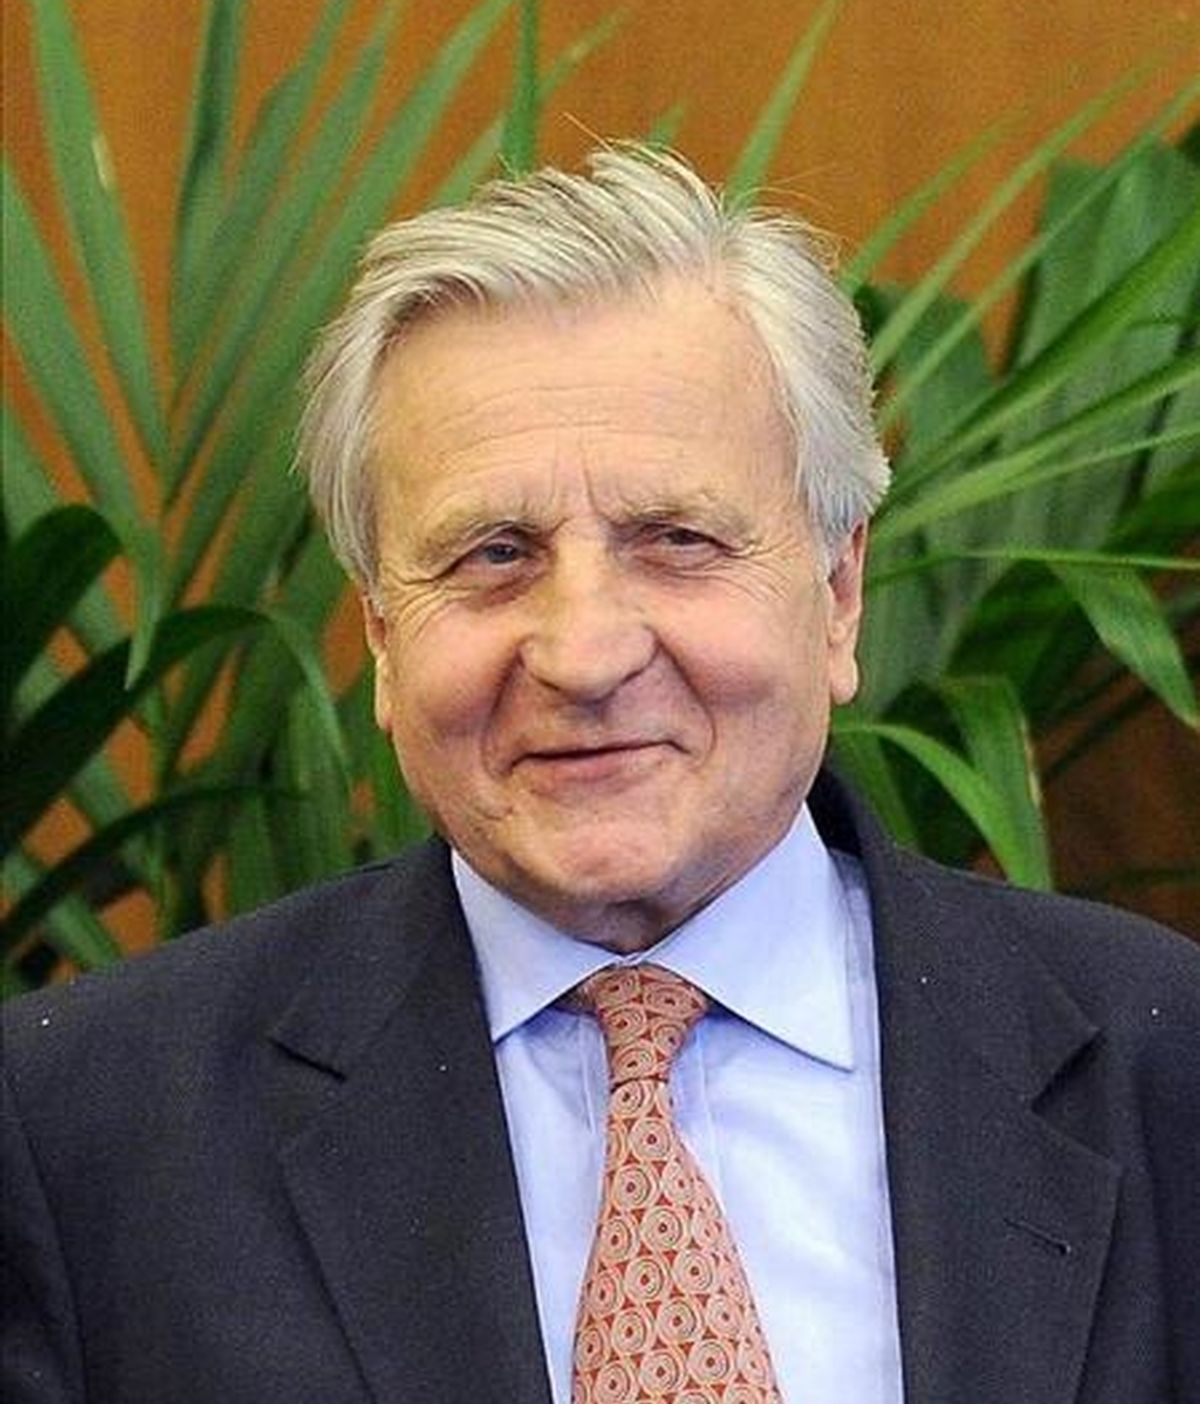 En la imagen, el presidente del Banco Central Europeo (BCE), Jean-Claude Trichet. EFE/Archivo